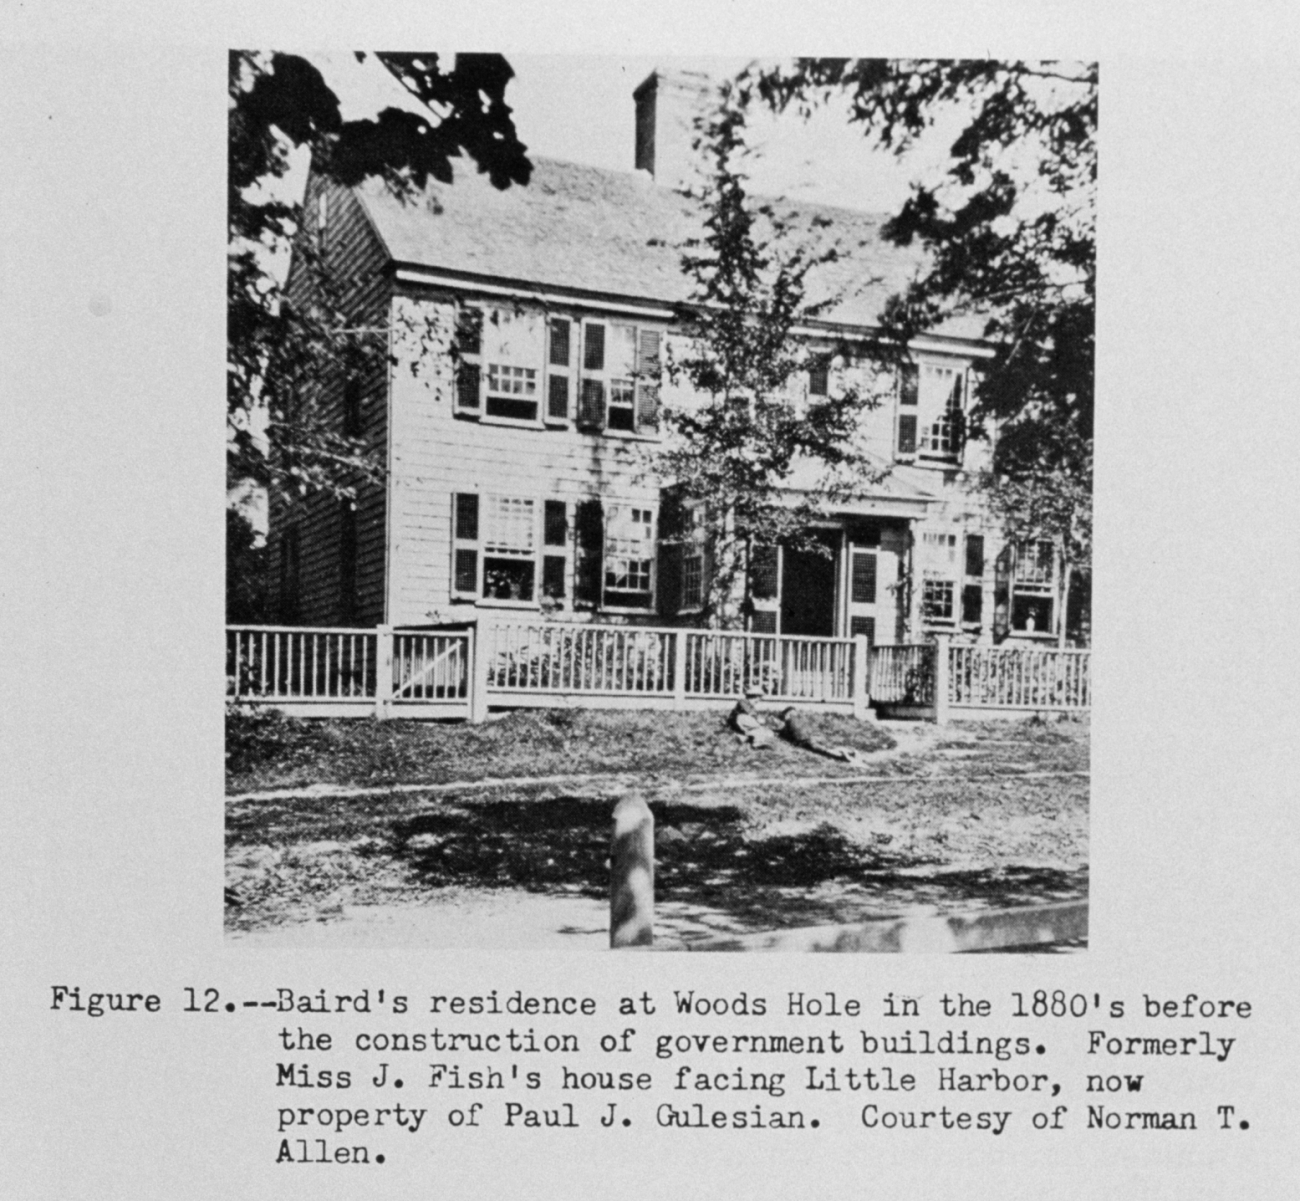 Spencer Fullerton Baird's residence at Woods Hole